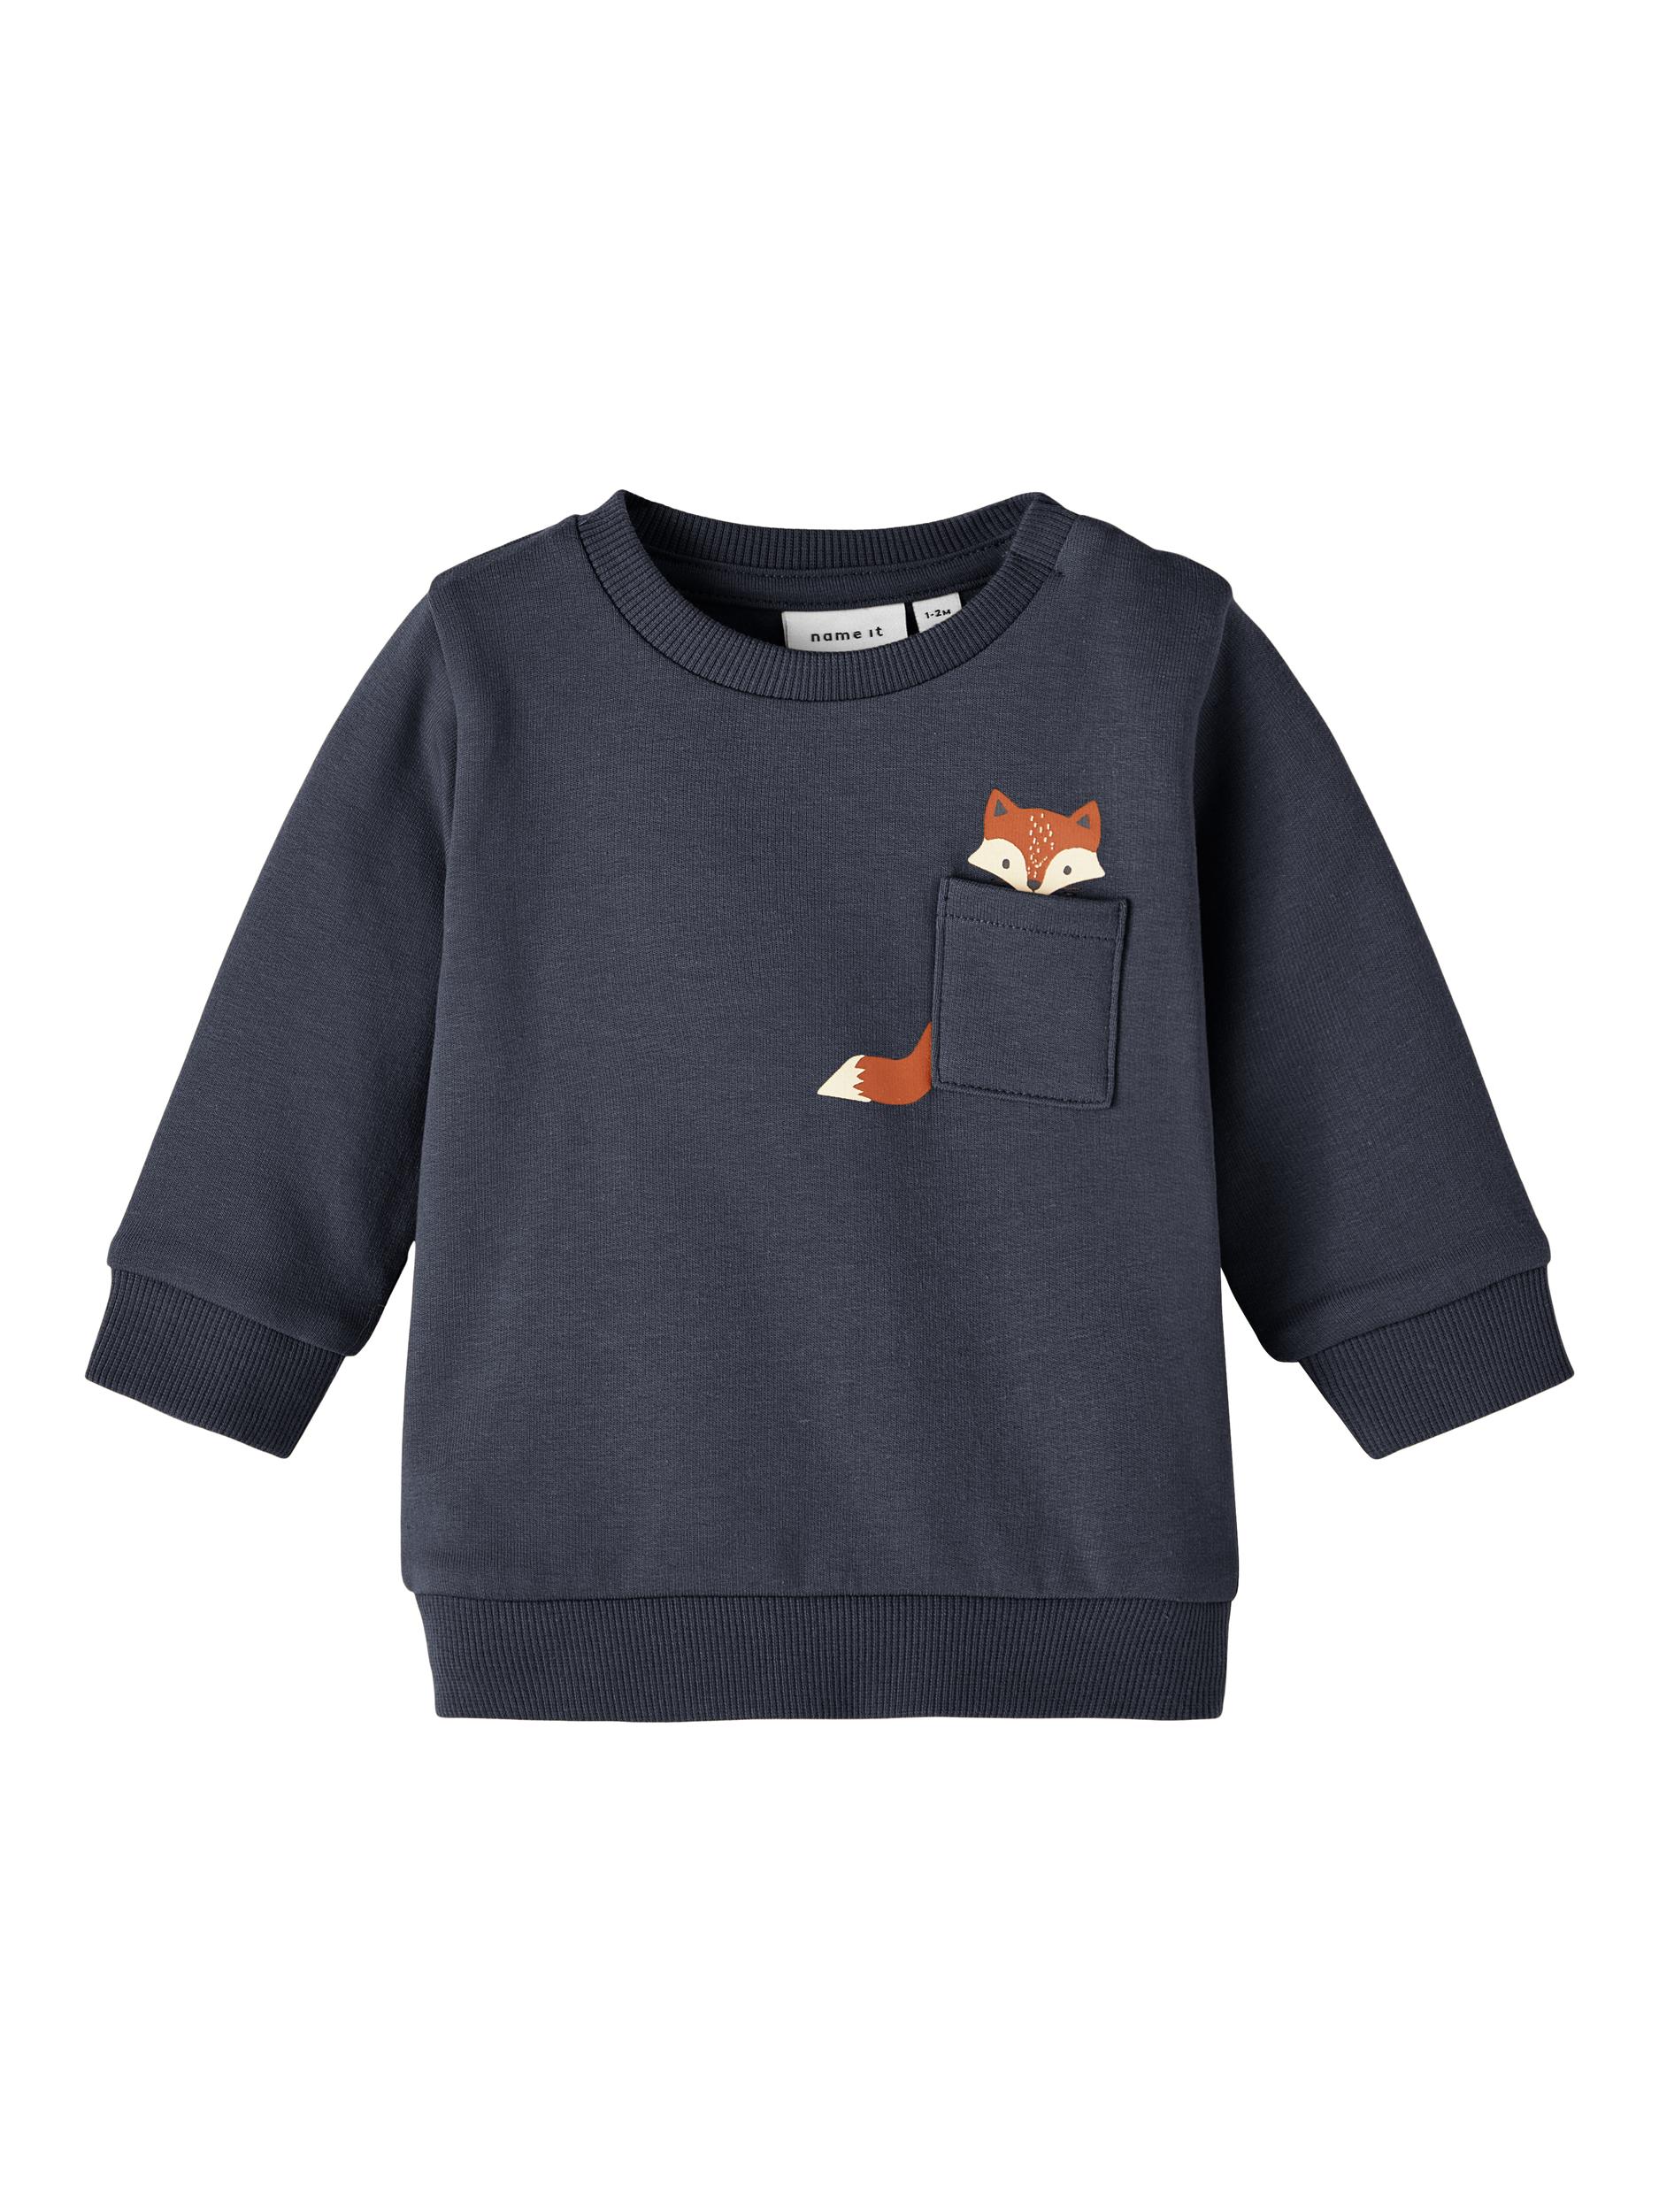 ➥ Bestellen Sie jetzt Baby Shirts, Blusen & Hemden bei Jelmoli Versand